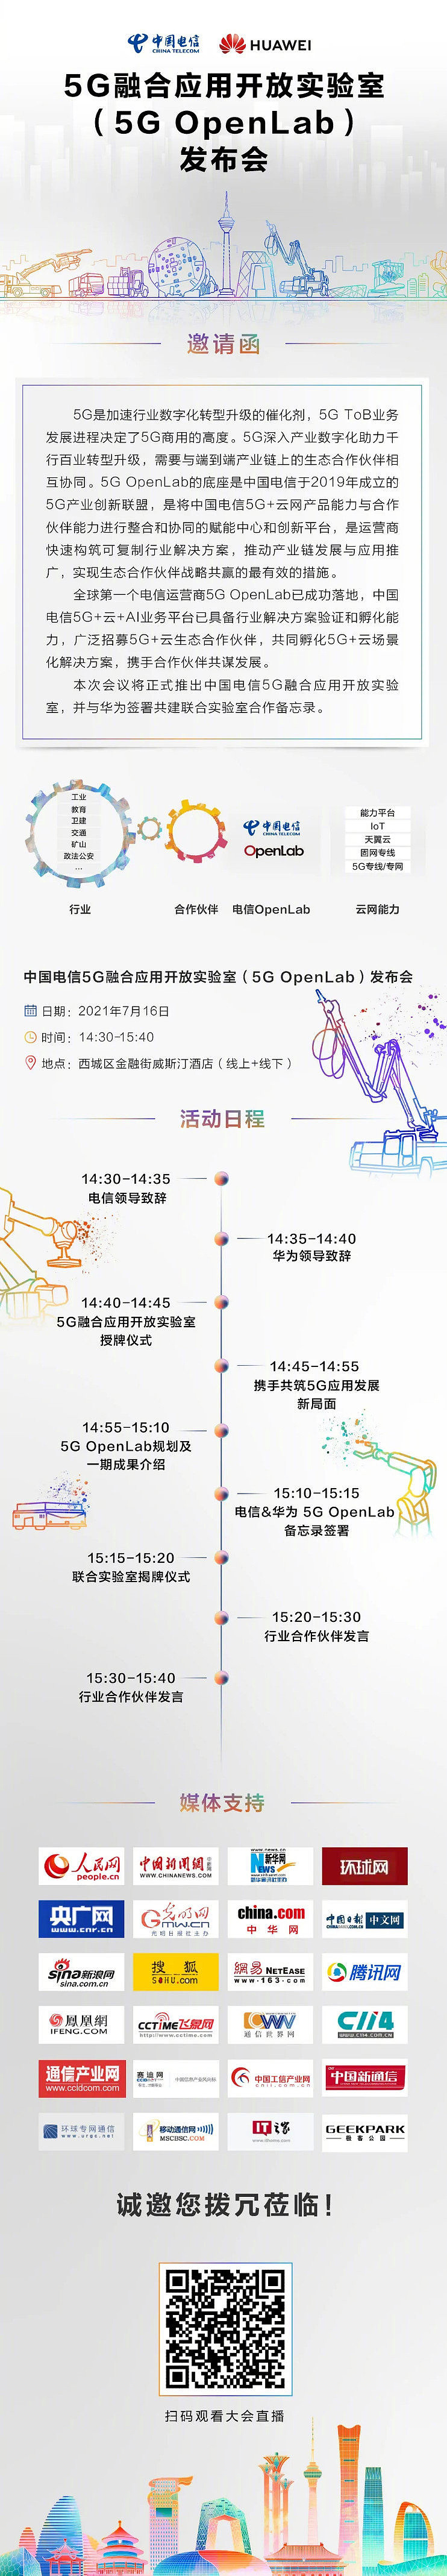 与华为共建：中国电信 5G 融合应用开放实验室将于明日发布 - 1